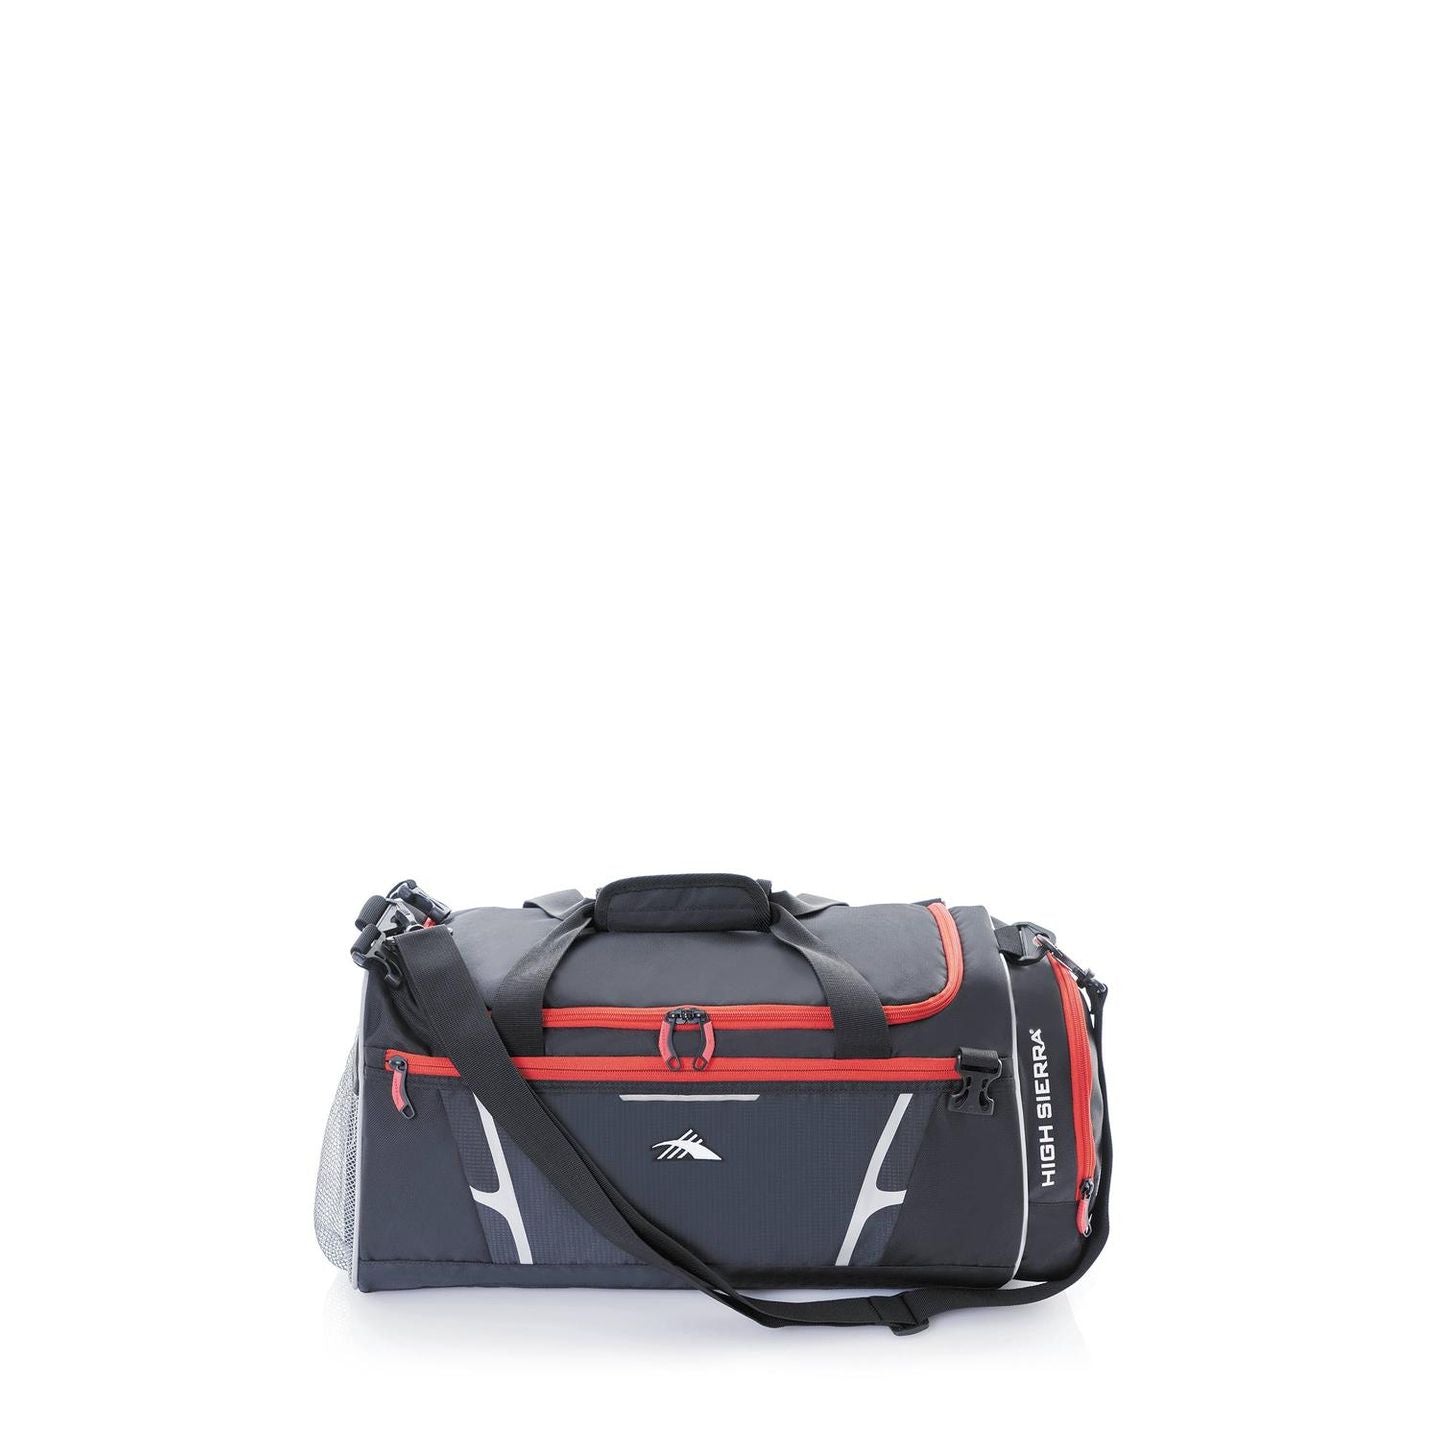 High Sierra Composite 2 in 1 Backpack Duffle Black